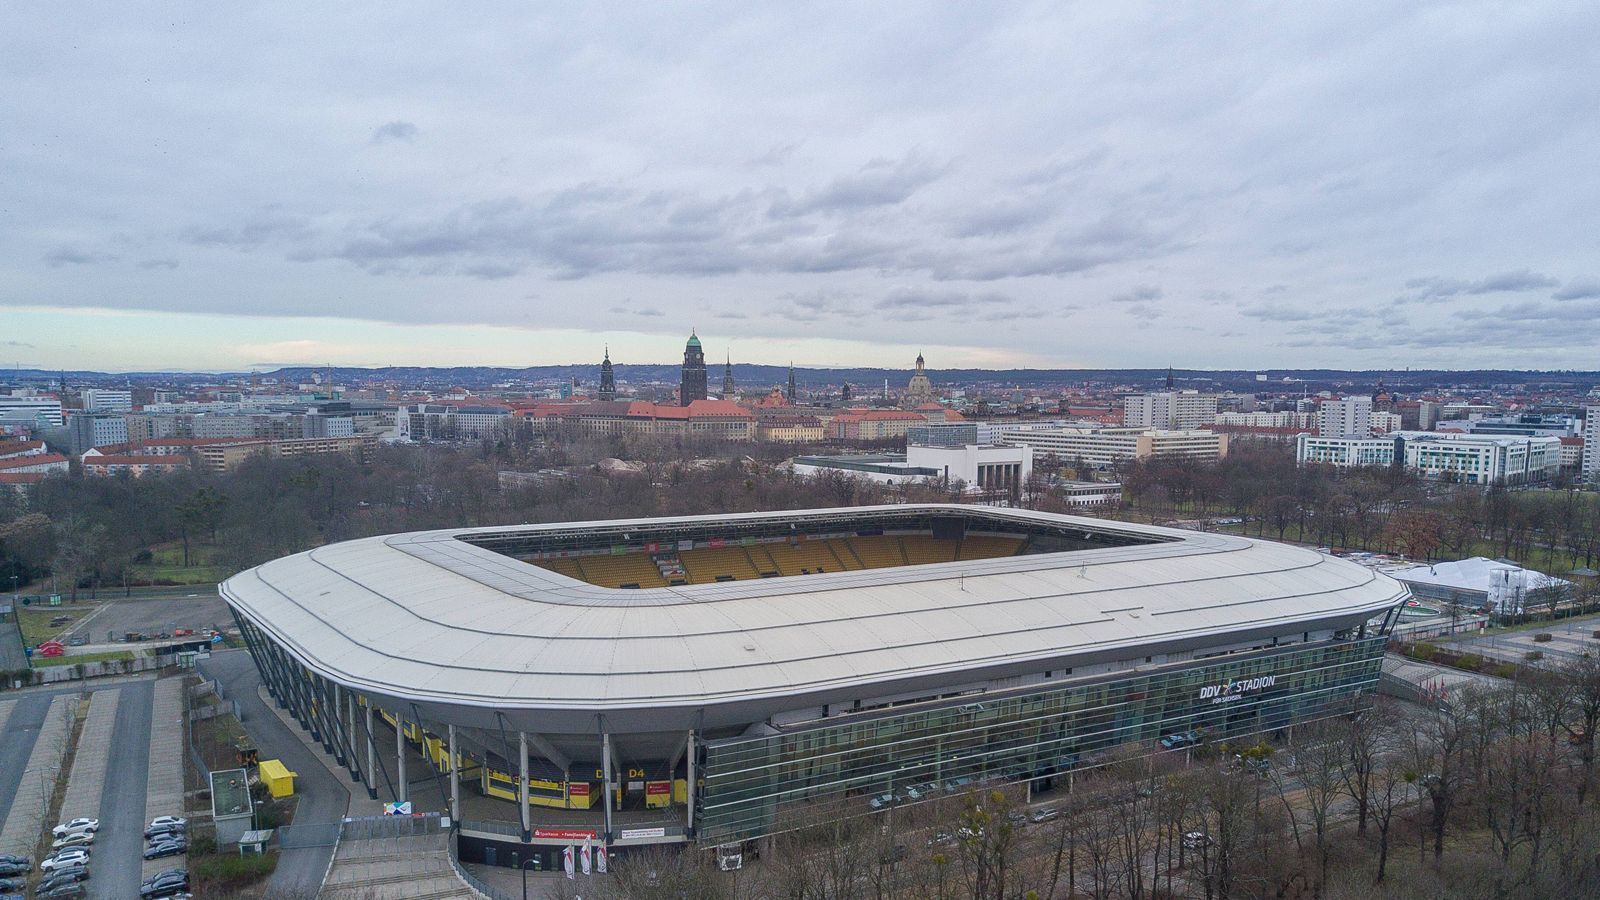 
                <strong>Glücksgas-Stadion (2010-2014, Dresden)</strong><br>
                Glücksgas-Stadion (2010-2014, Dresden): Ein bayerischer Energie-Dienstleister war dafür verantwortlich, dass das ehemalige Rudolf-Harbig-Stadion den umstrittenen Namen "Glücksgas-Stadion" erhielt. Seit 2016 heißt es ganz schlicht "DDV-Stadion". 
              